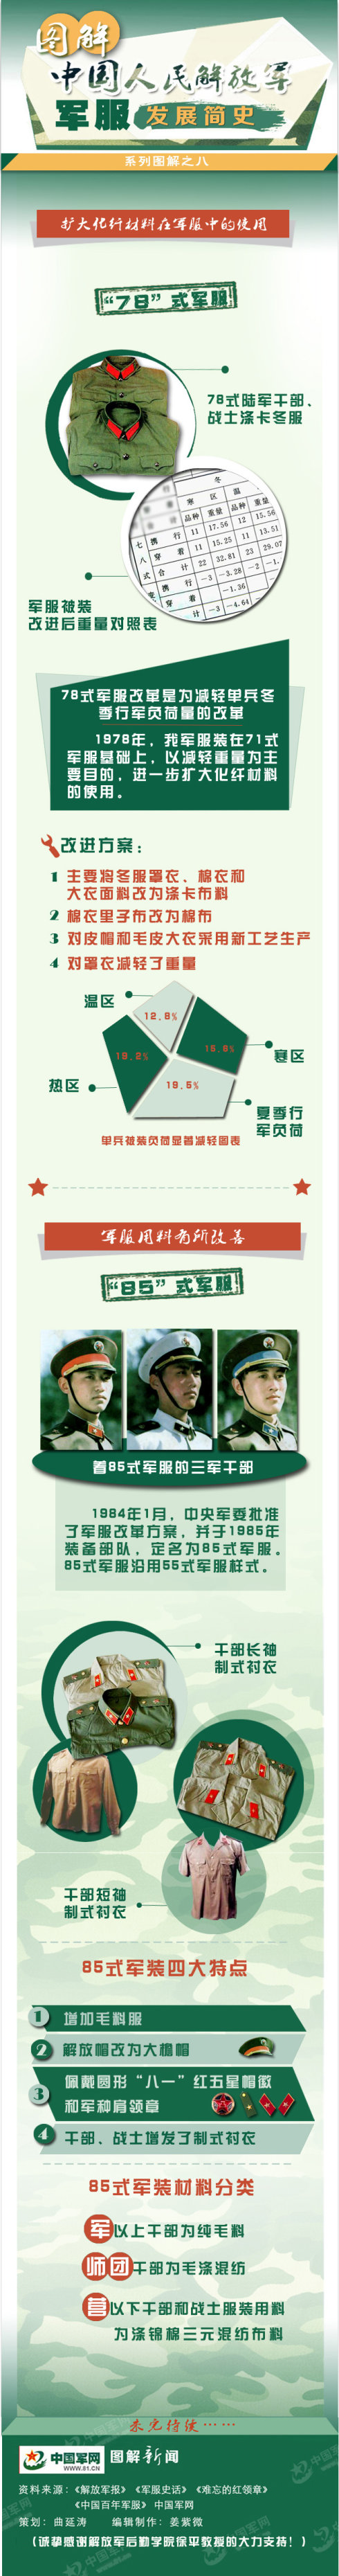 中国人民解放军制服发展简史全图解